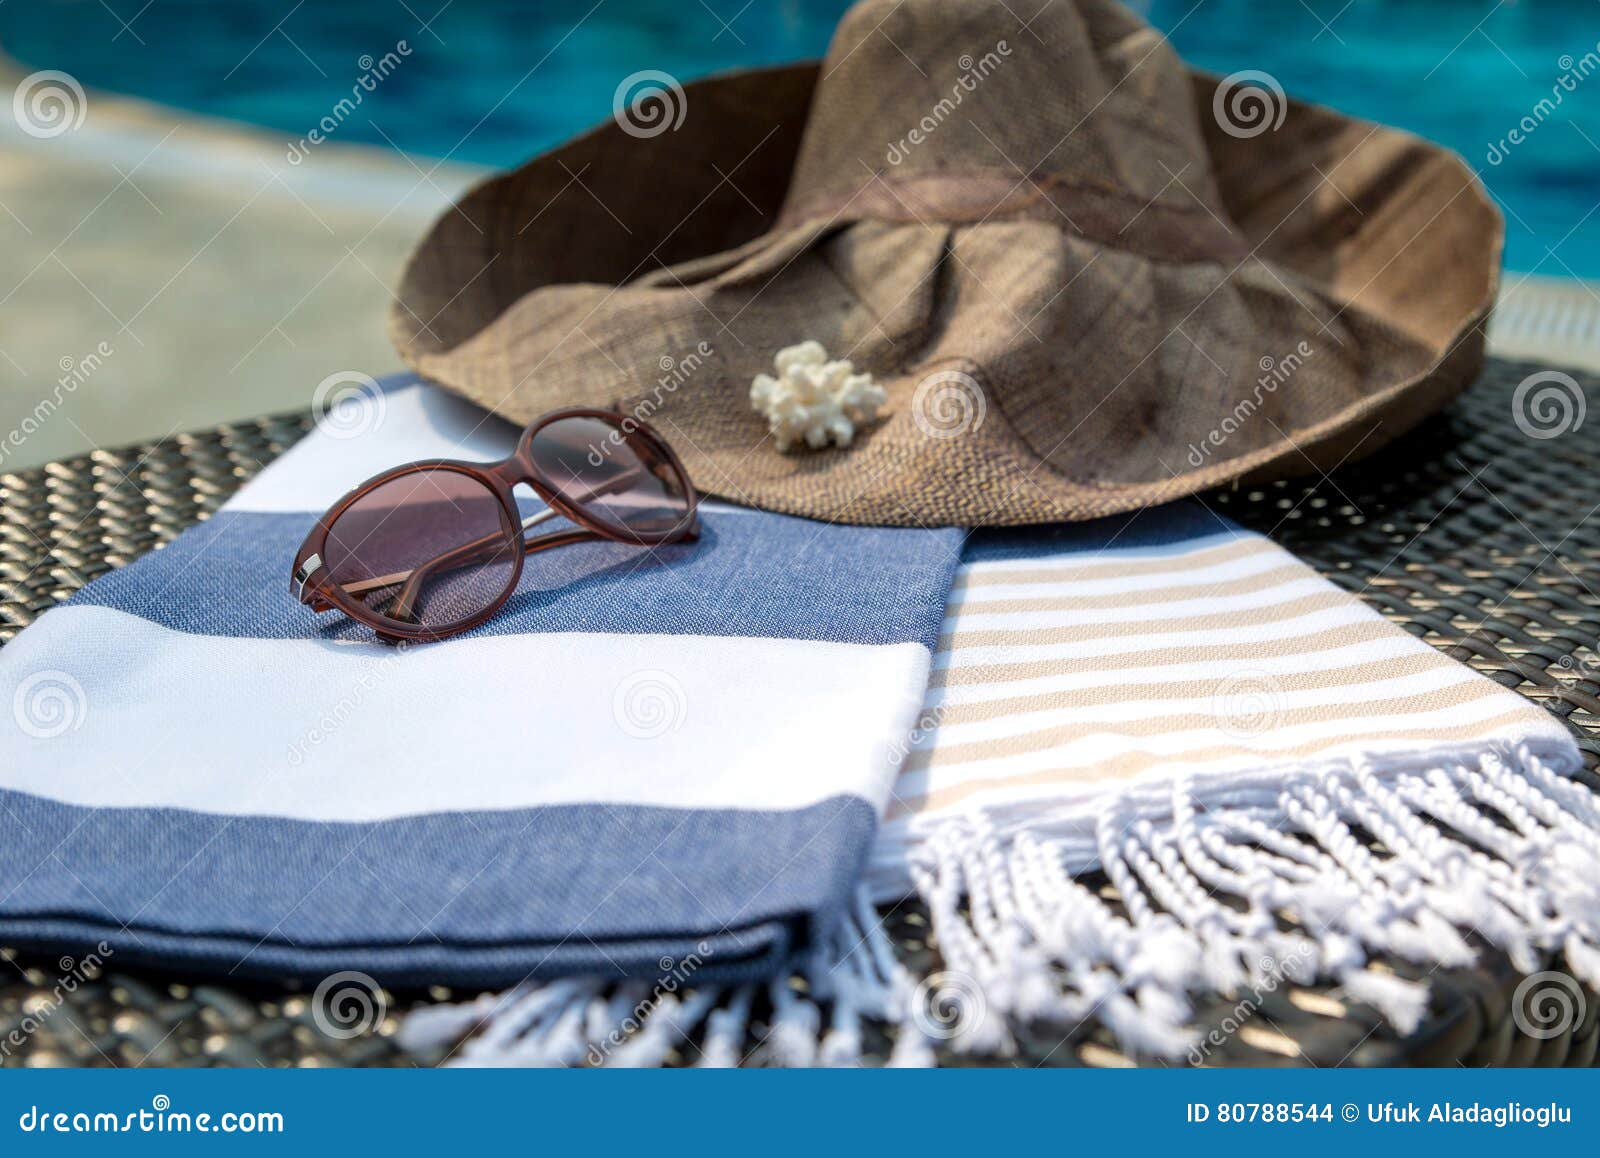 Hierapolis Beach Towel - Beige